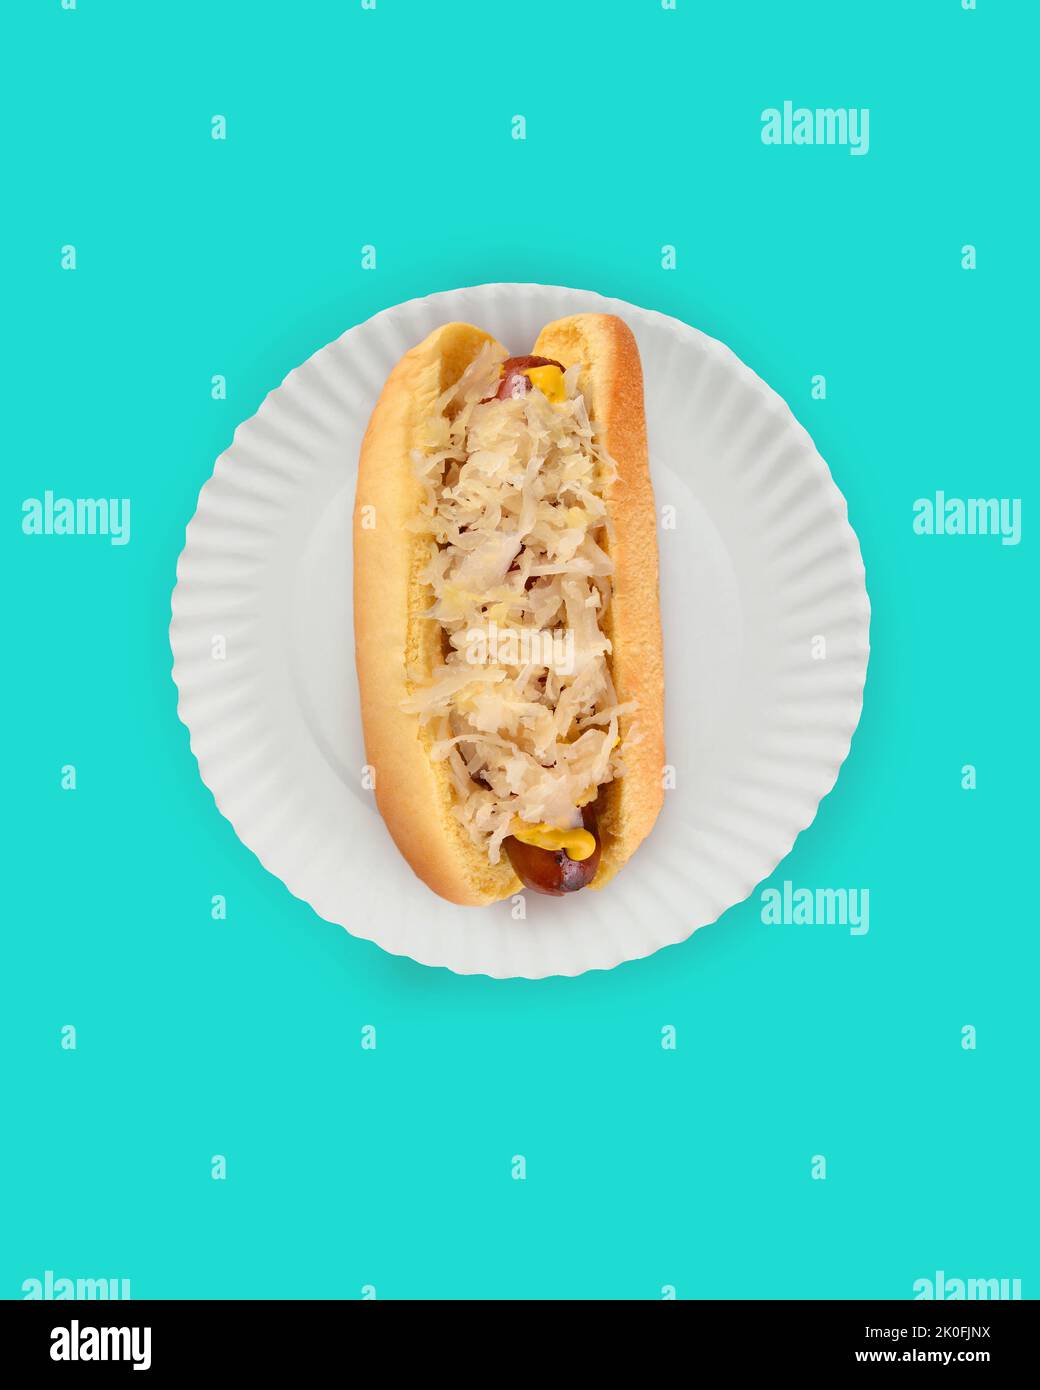 Piatto Lay Hot Dog in Bun Still Life. Fankfurter in pancia con Sauerkraut su un piatto di carta bianca su sfondo teal con spazio copia. Foto Stock